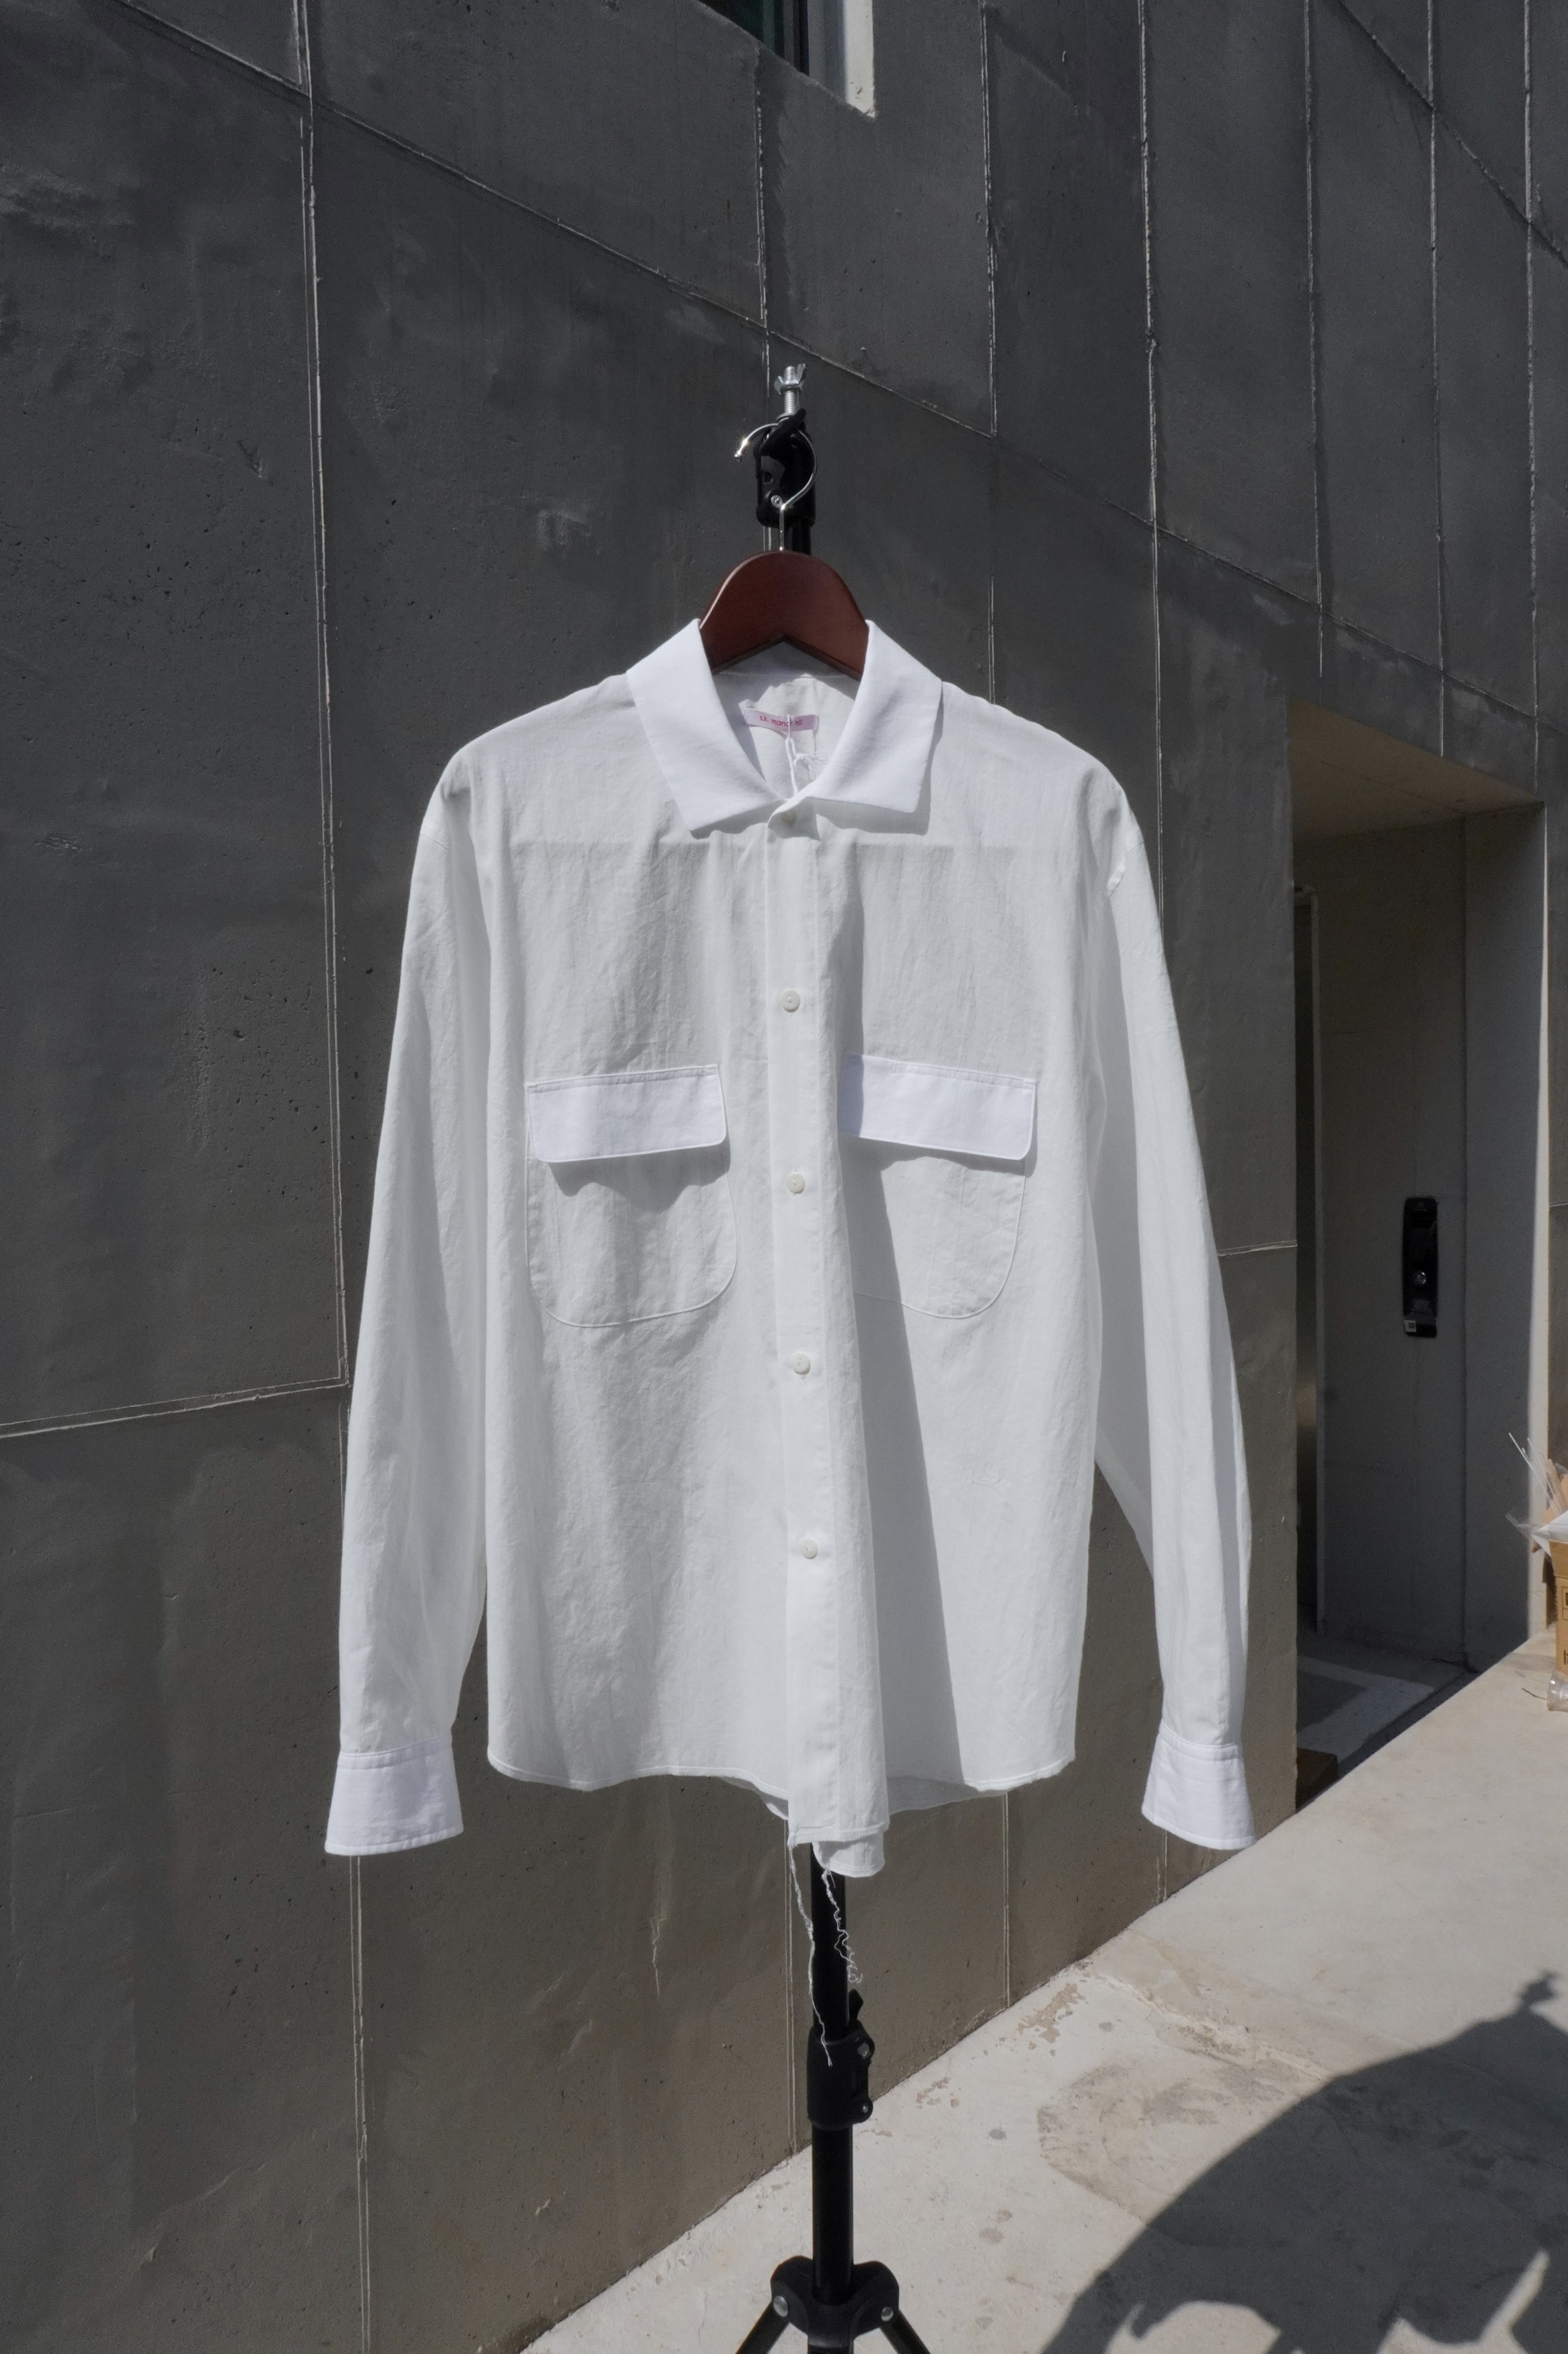 [S.K. MANOR HILL] Moil Shirt - White Cotton